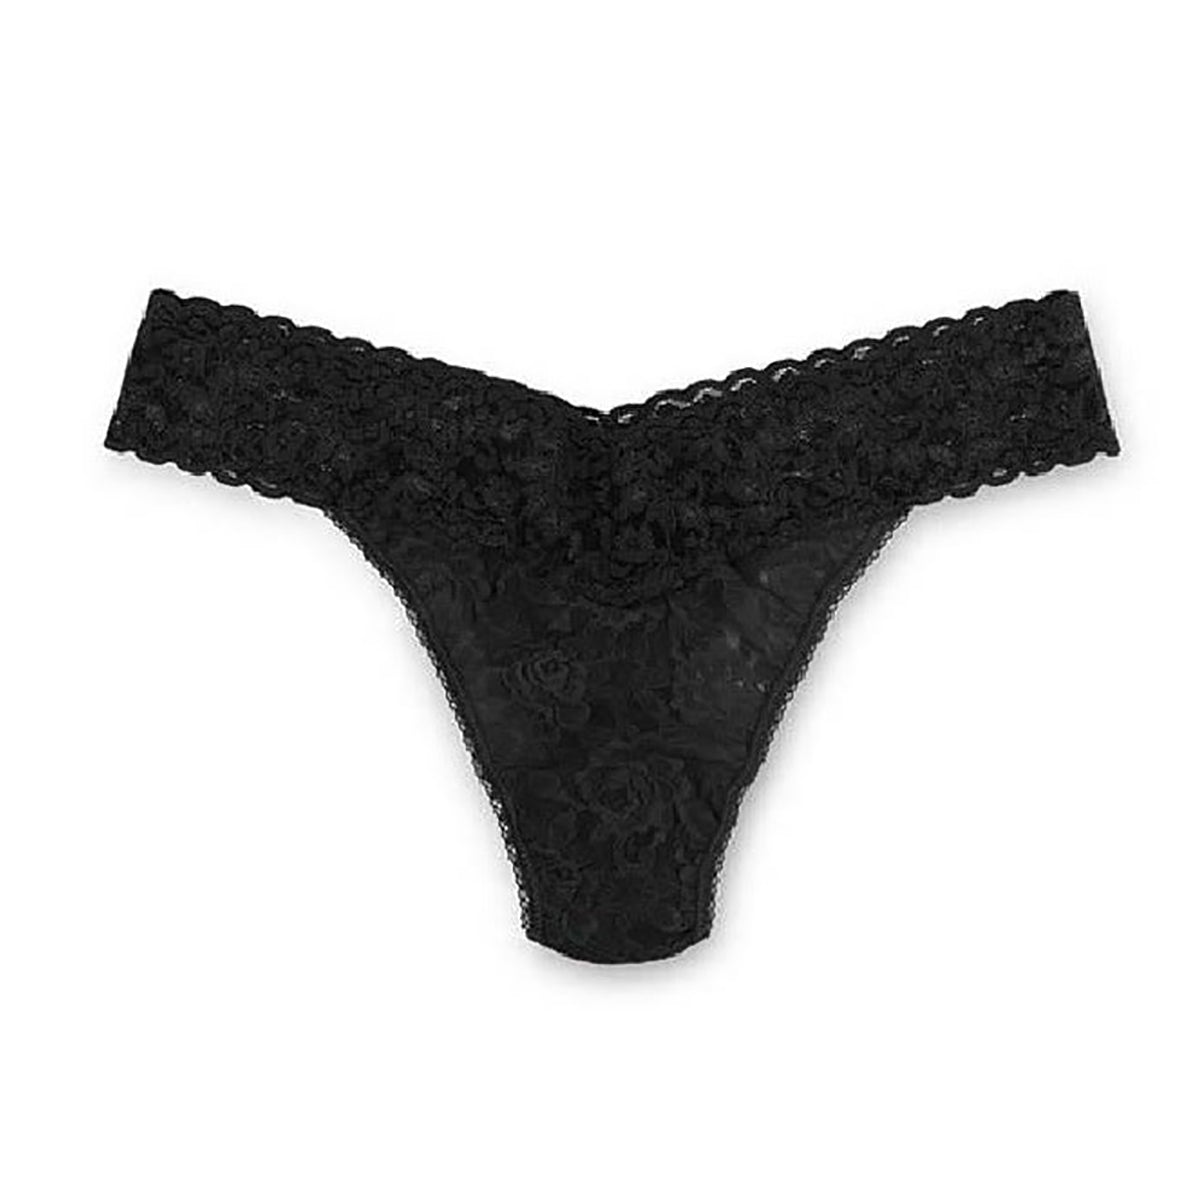 Plus Size Lingerie Gowns 3x-4x Underwear Print 1 Pieces Panties